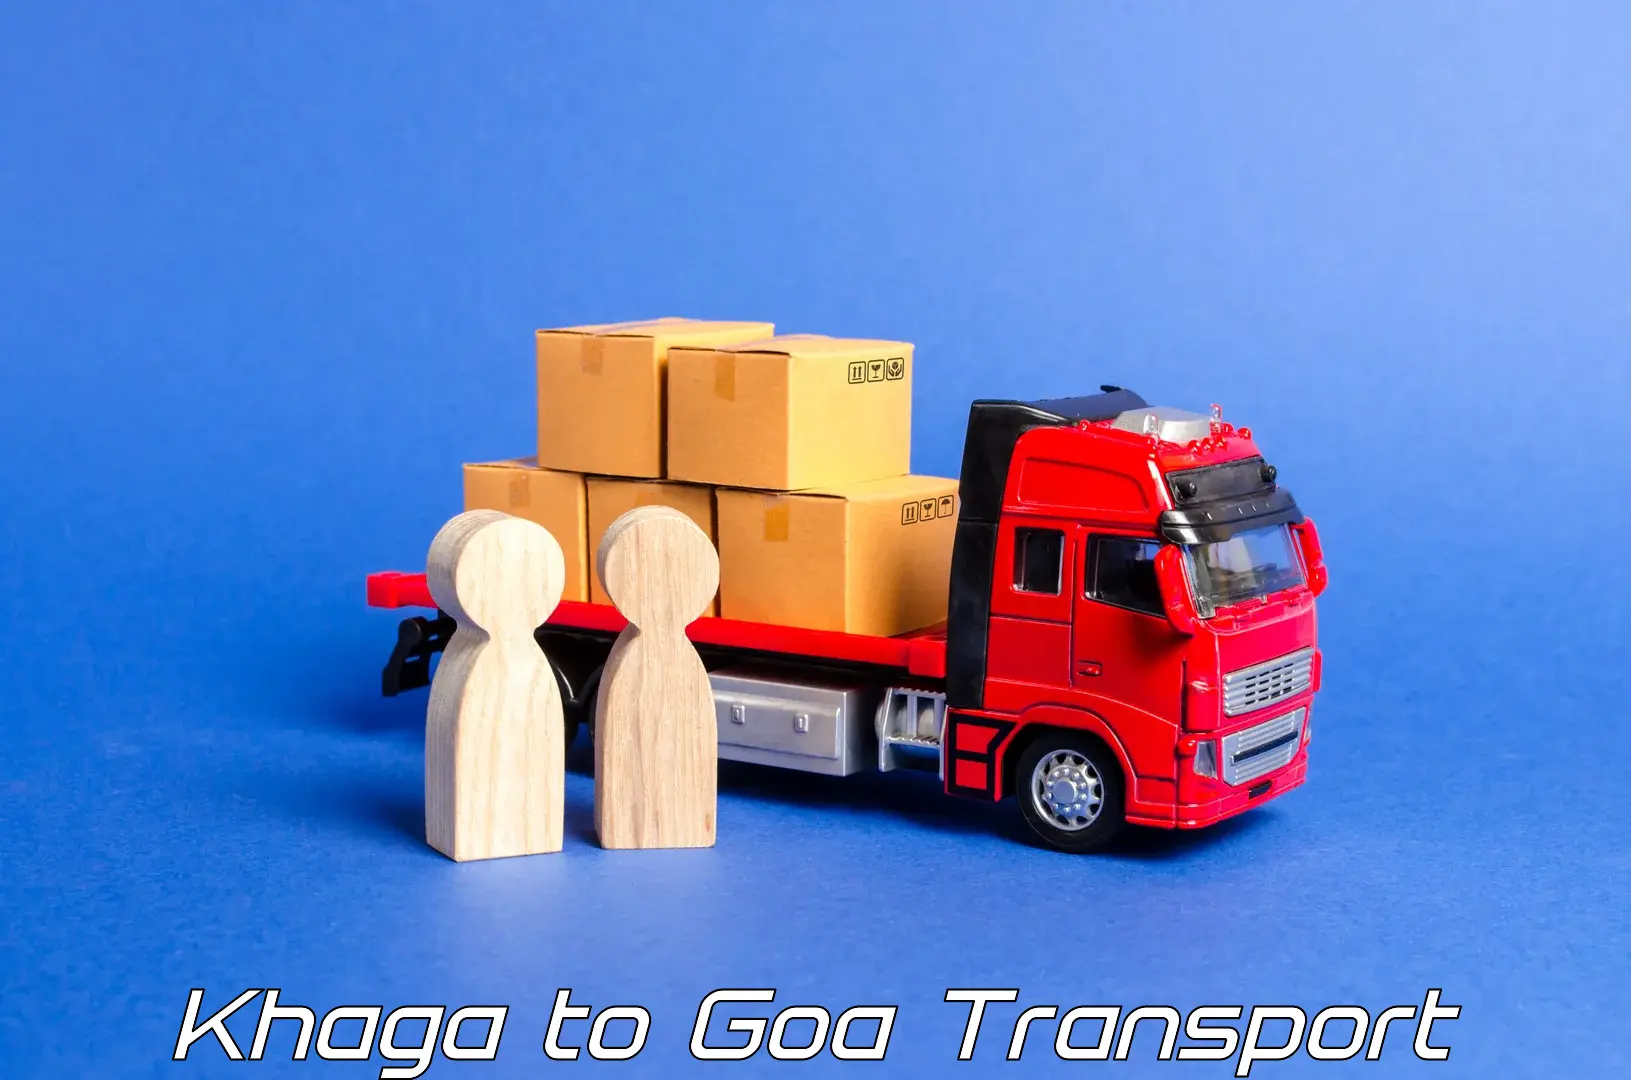 Nearby transport service Khaga to Margao